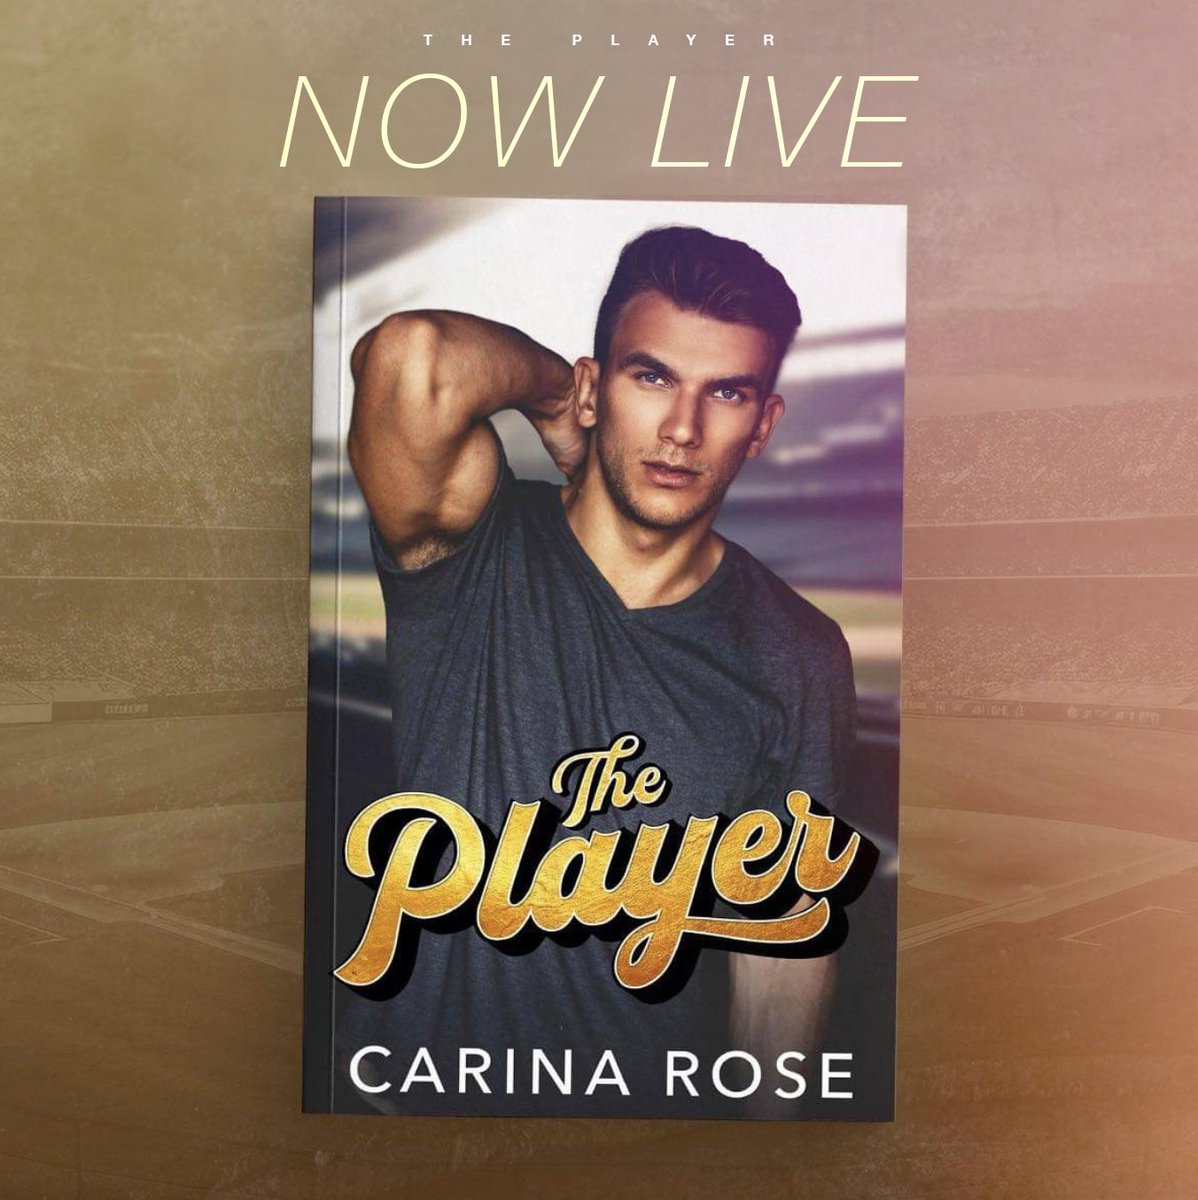 ⚾  ℍ𝕆𝕋 ℕ𝔼𝕎 ℝ𝔼𝕃𝔼𝔸𝕊𝔼 ⚾
T𝐡e P𝐥a𝐲e𝐫 by Carina Rose is LIVE!
Don’t miss this all new steamy sports romance!

#Oneclick today!
➜ books2read.com/u/bp1DrJ

@wordsmithpublic  @CarinaRoseBooks